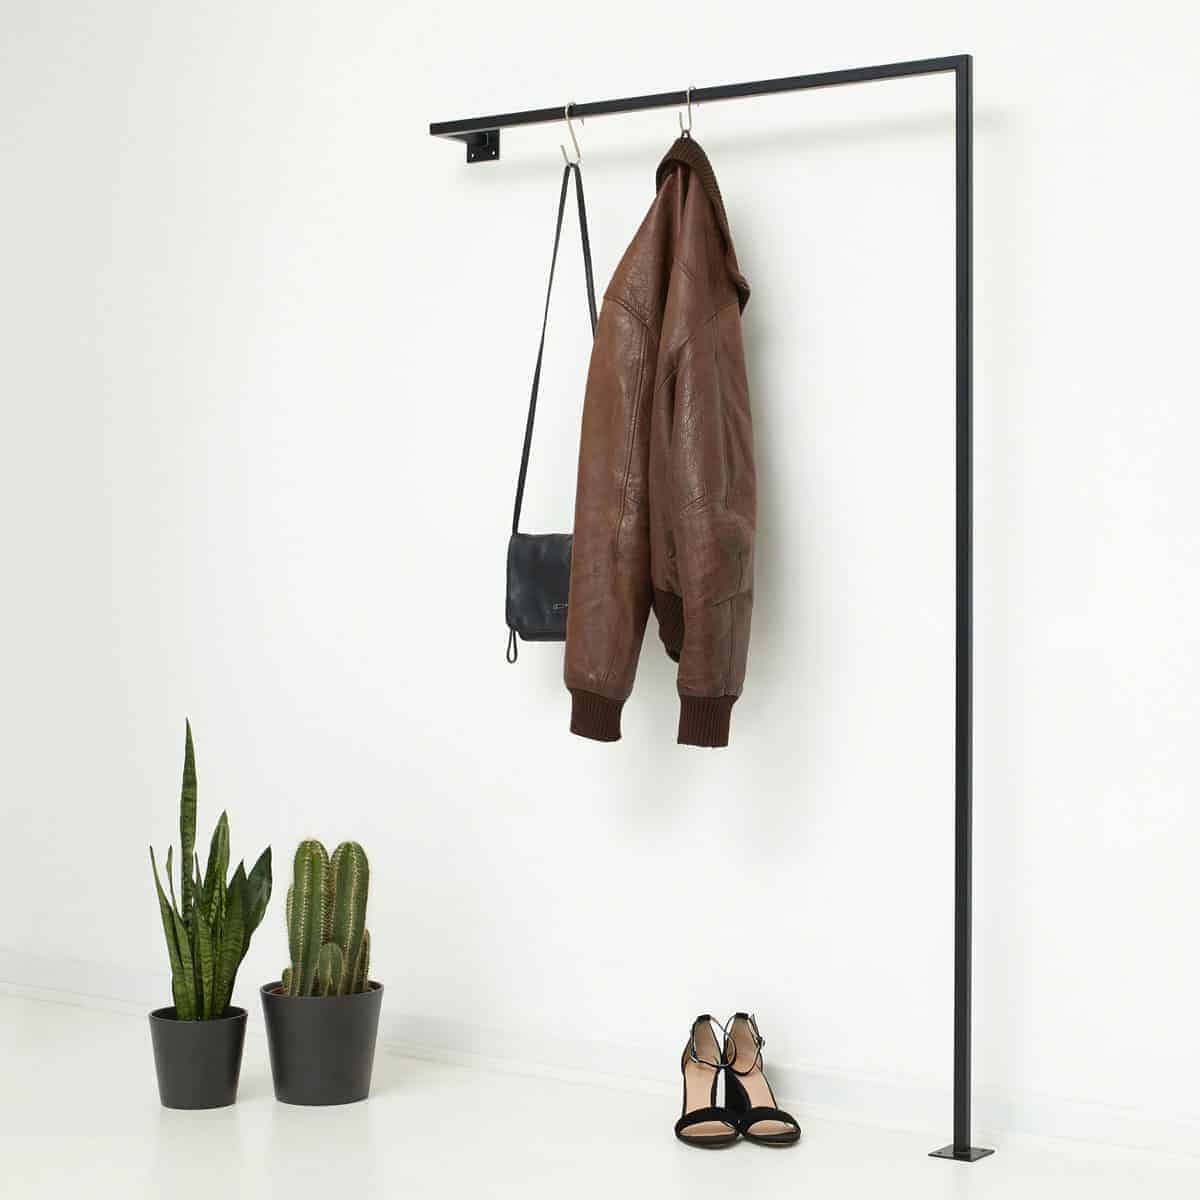 Kleiderstange Industrial Style Garderobe für schmalen Flur geschweisst aus Metall schwarz pulverbeschichtet